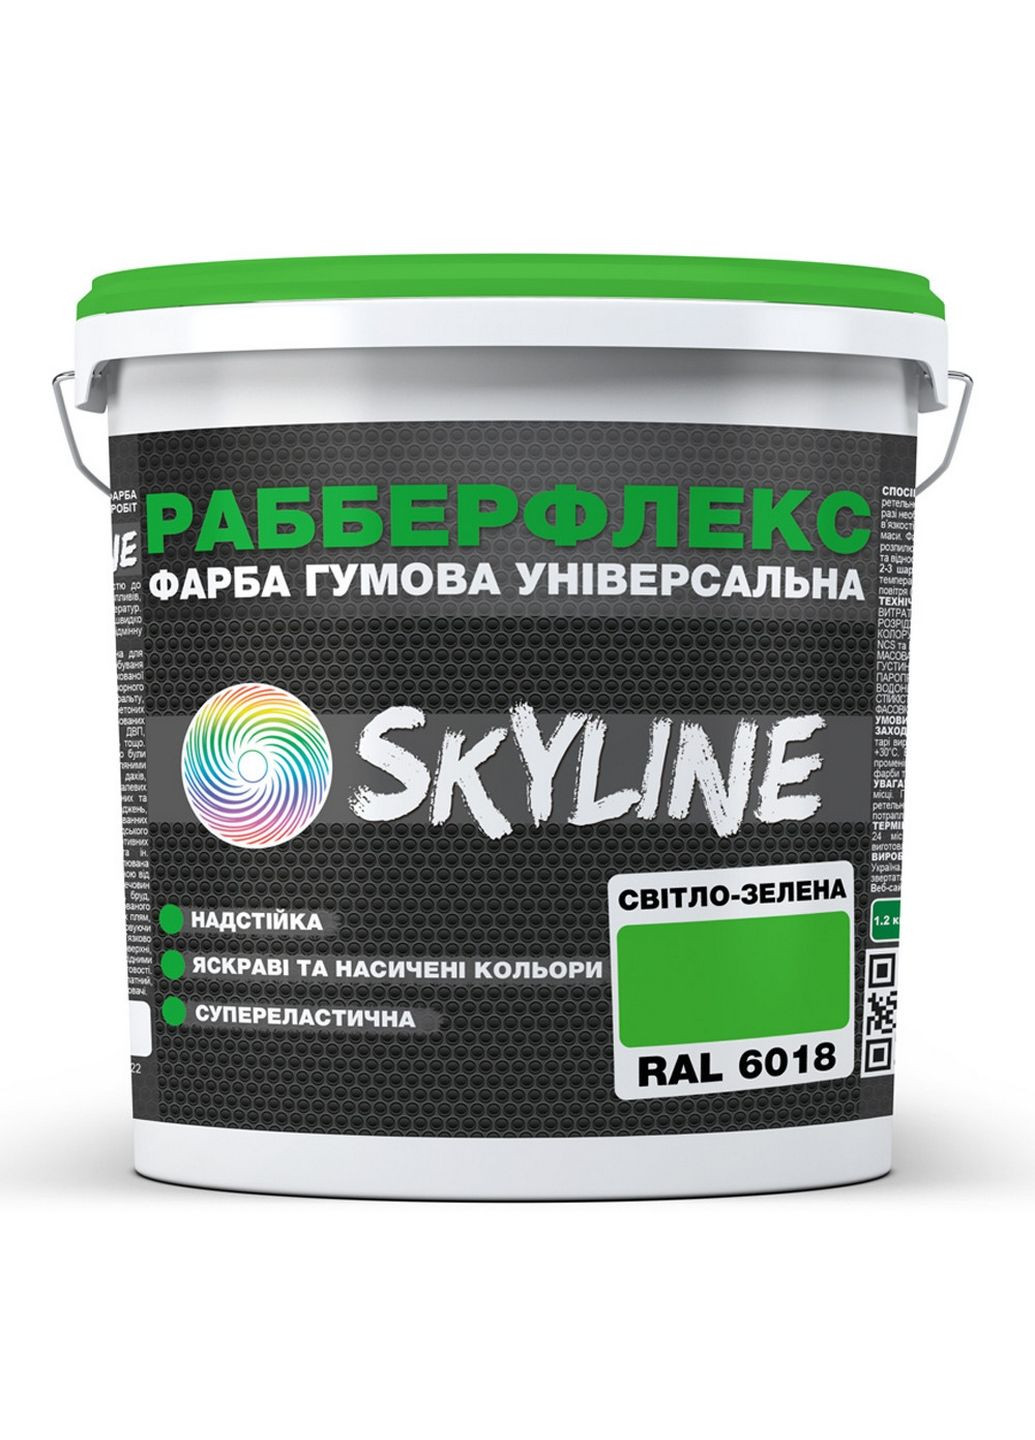 Надстійка фарба гумова супереластична «РабберФлекс» 3,6 кг SkyLine (283326711)